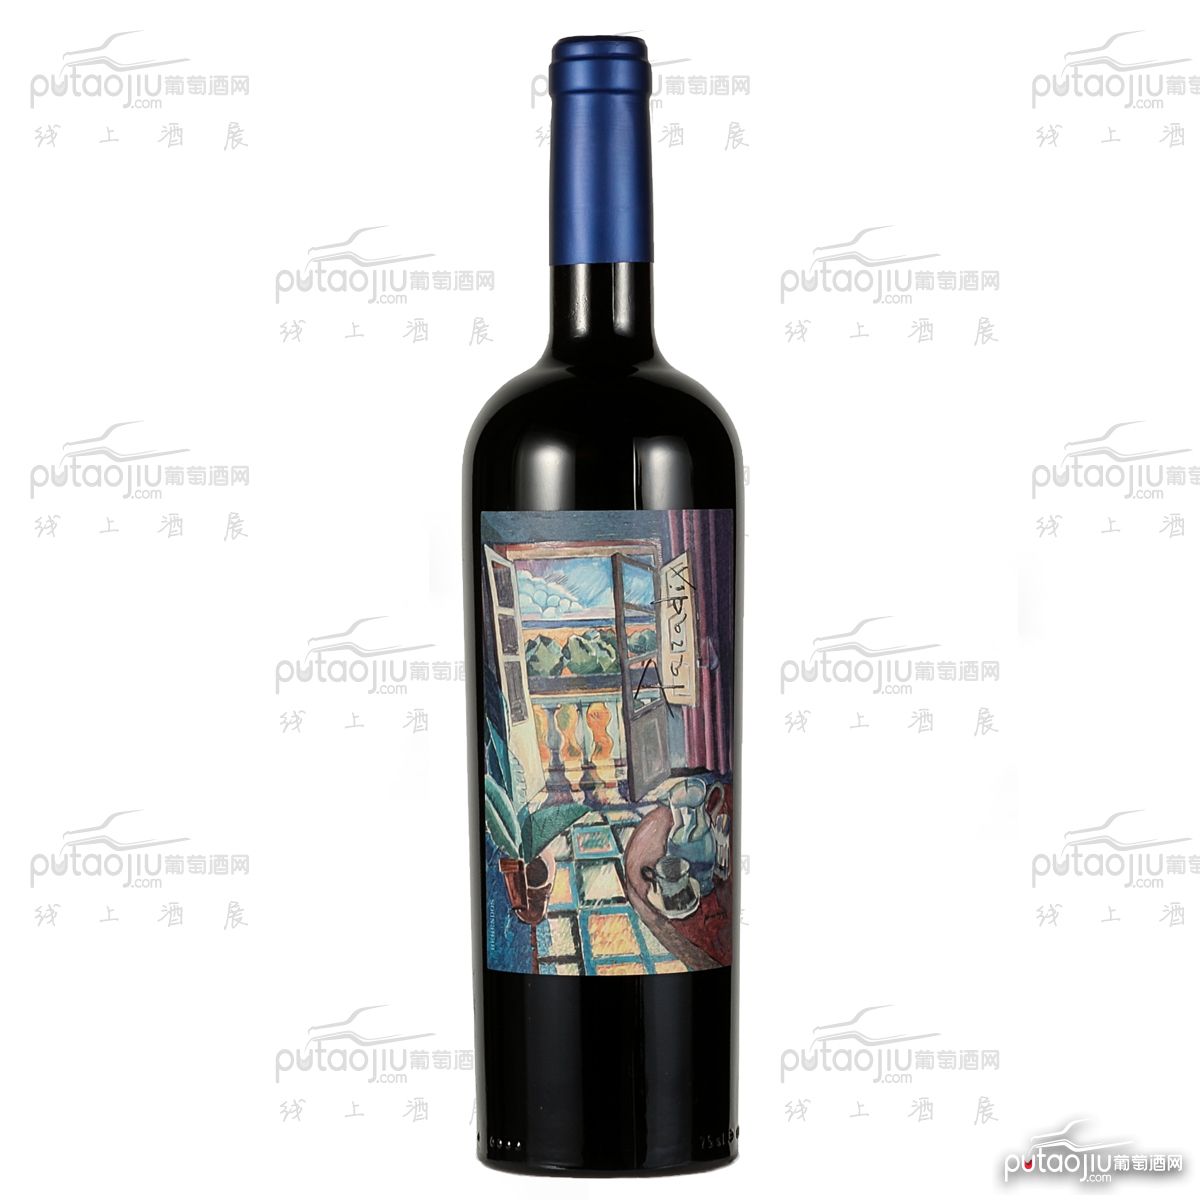 西班牙艺术酒庄自由梦系列黑皮诺人间天堂D.O.P干红葡萄酒红酒